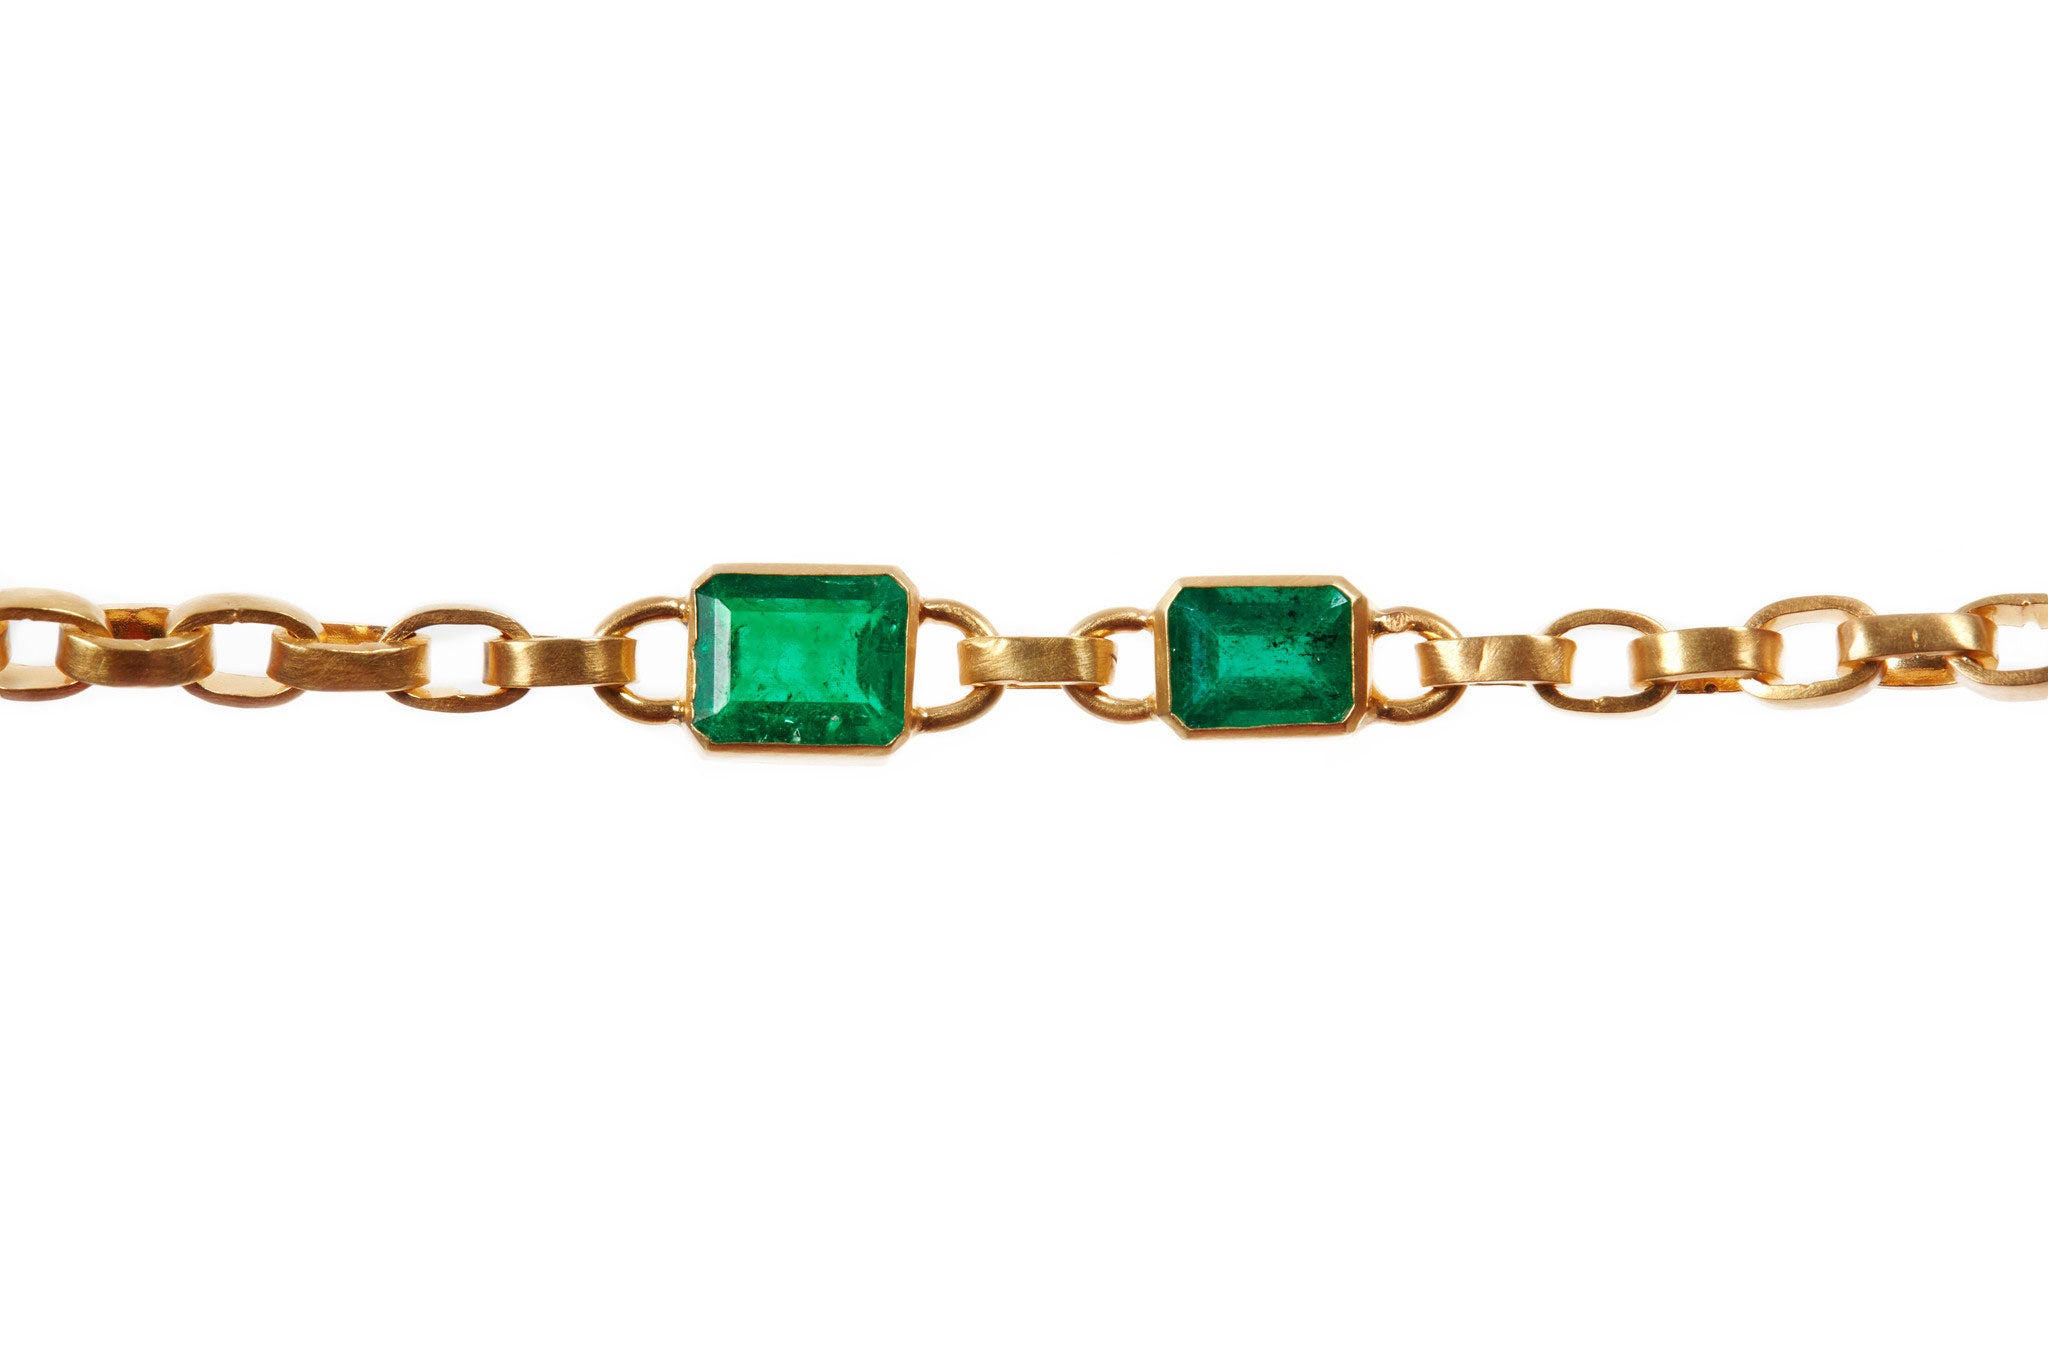 darius jewels hand made fine jewelry double emerald signature chain colombian 18k yellow gold darius khonsary